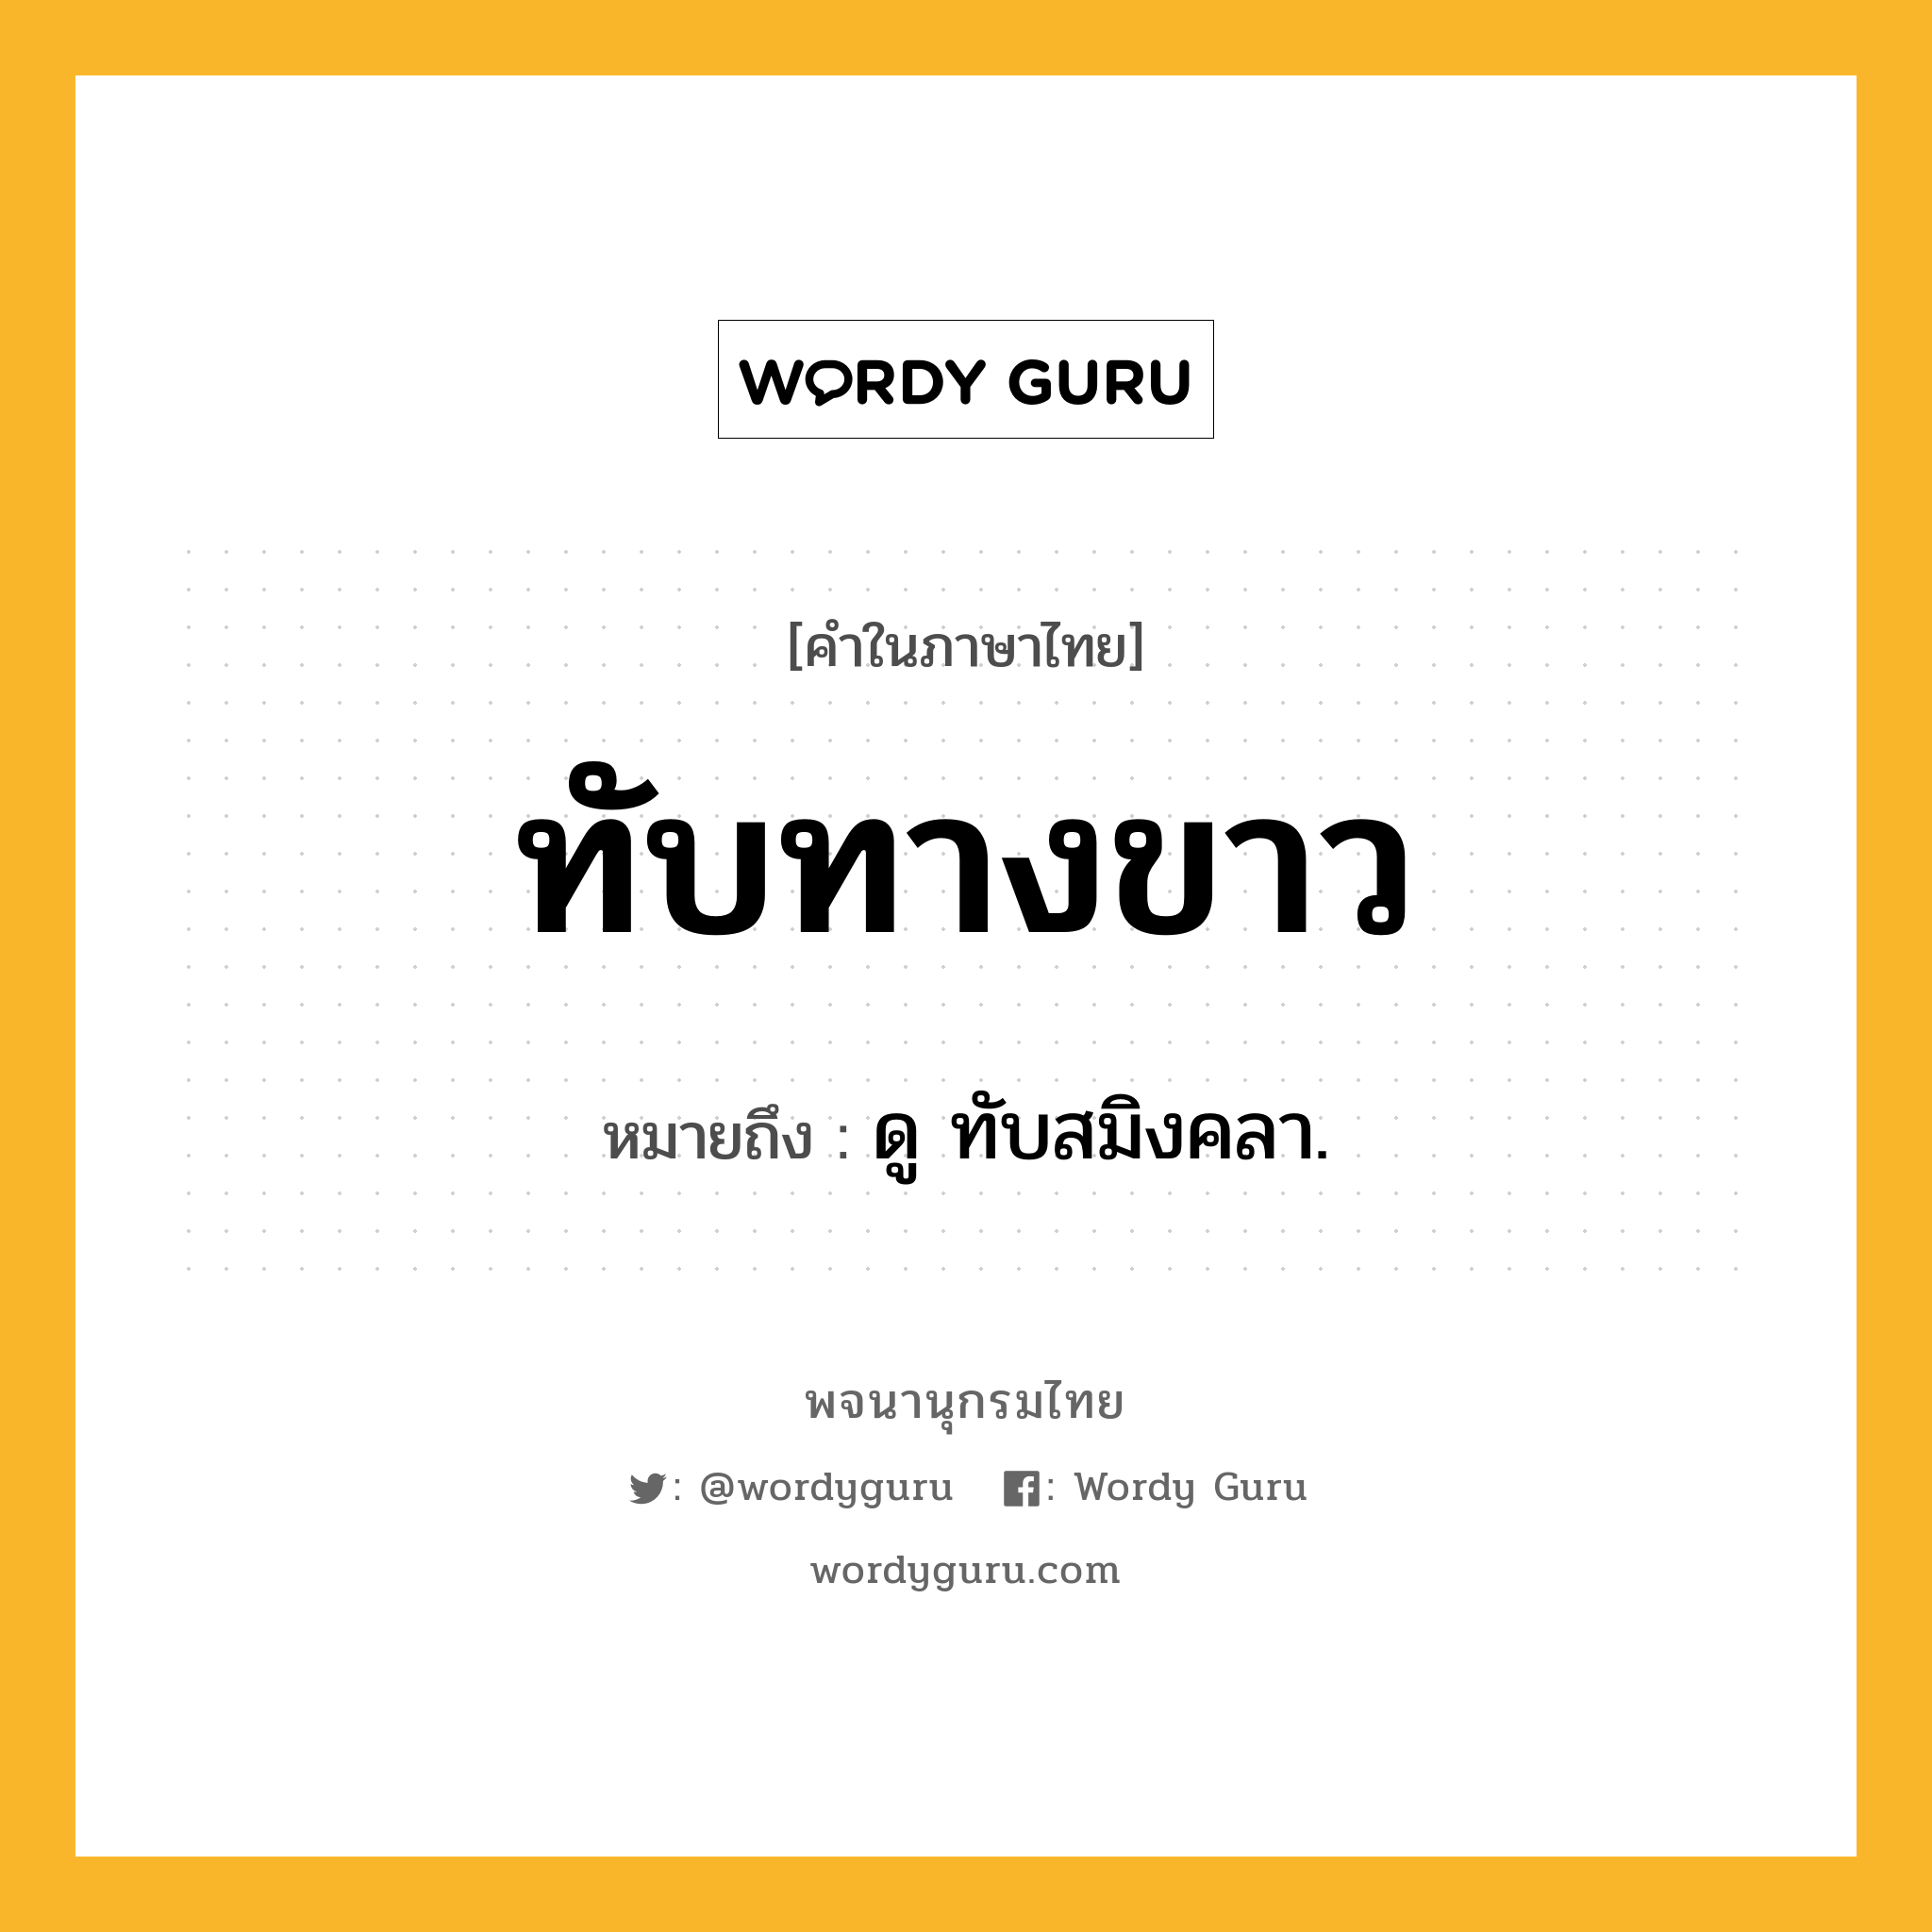 ทับทางขาว หมายถึงอะไร?, คำในภาษาไทย ทับทางขาว หมายถึง ดู ทับสมิงคลา.